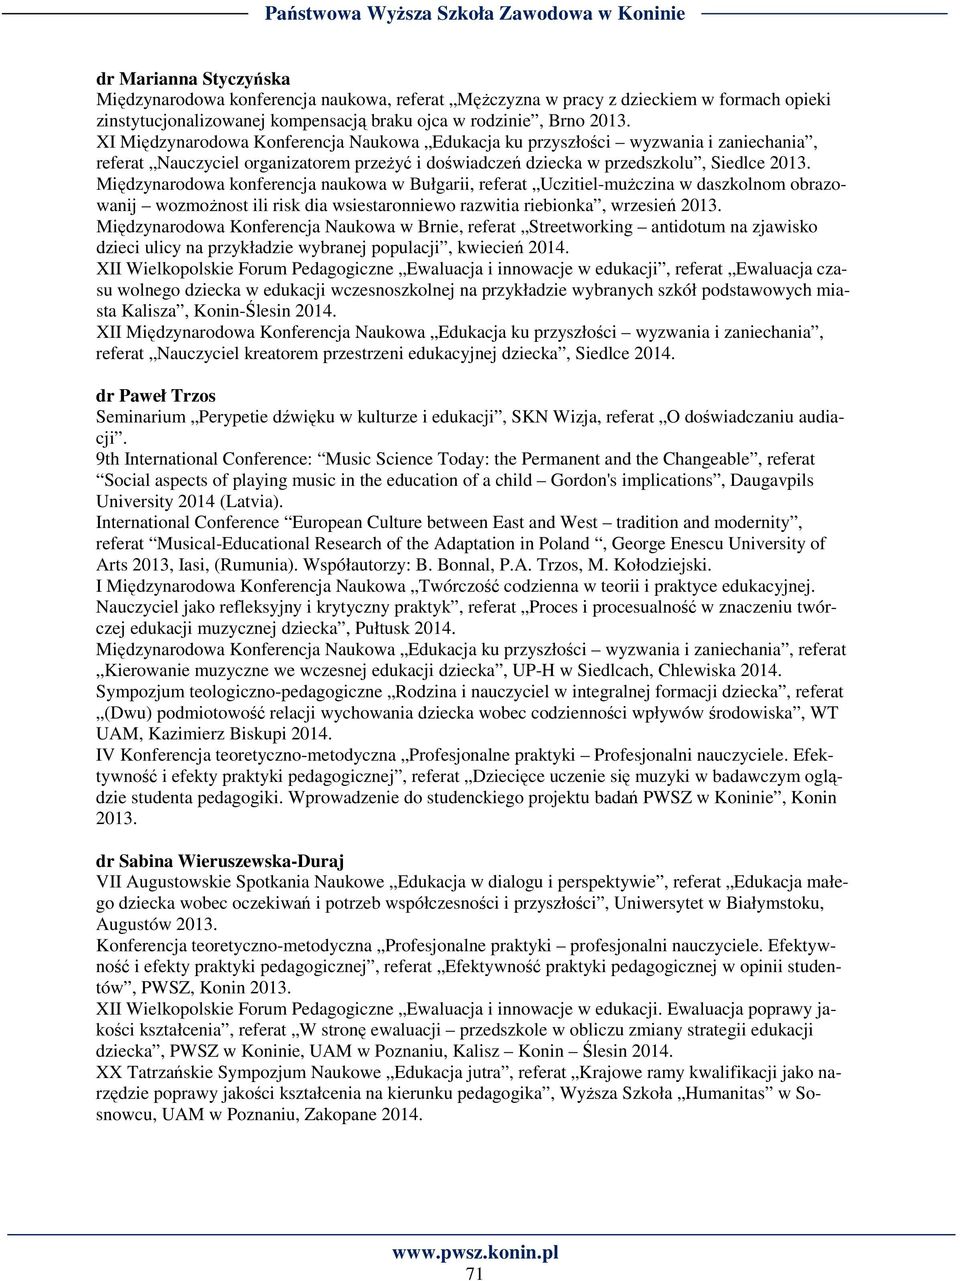 Międzynarodowa konferencja naukowa w Bułgarii, referat Uczitiel-mużczina w daszkolnom obrazowanij wozmożnost ili risk dia wsiestaronniewo razwitia riebionka, wrzesień 2013.